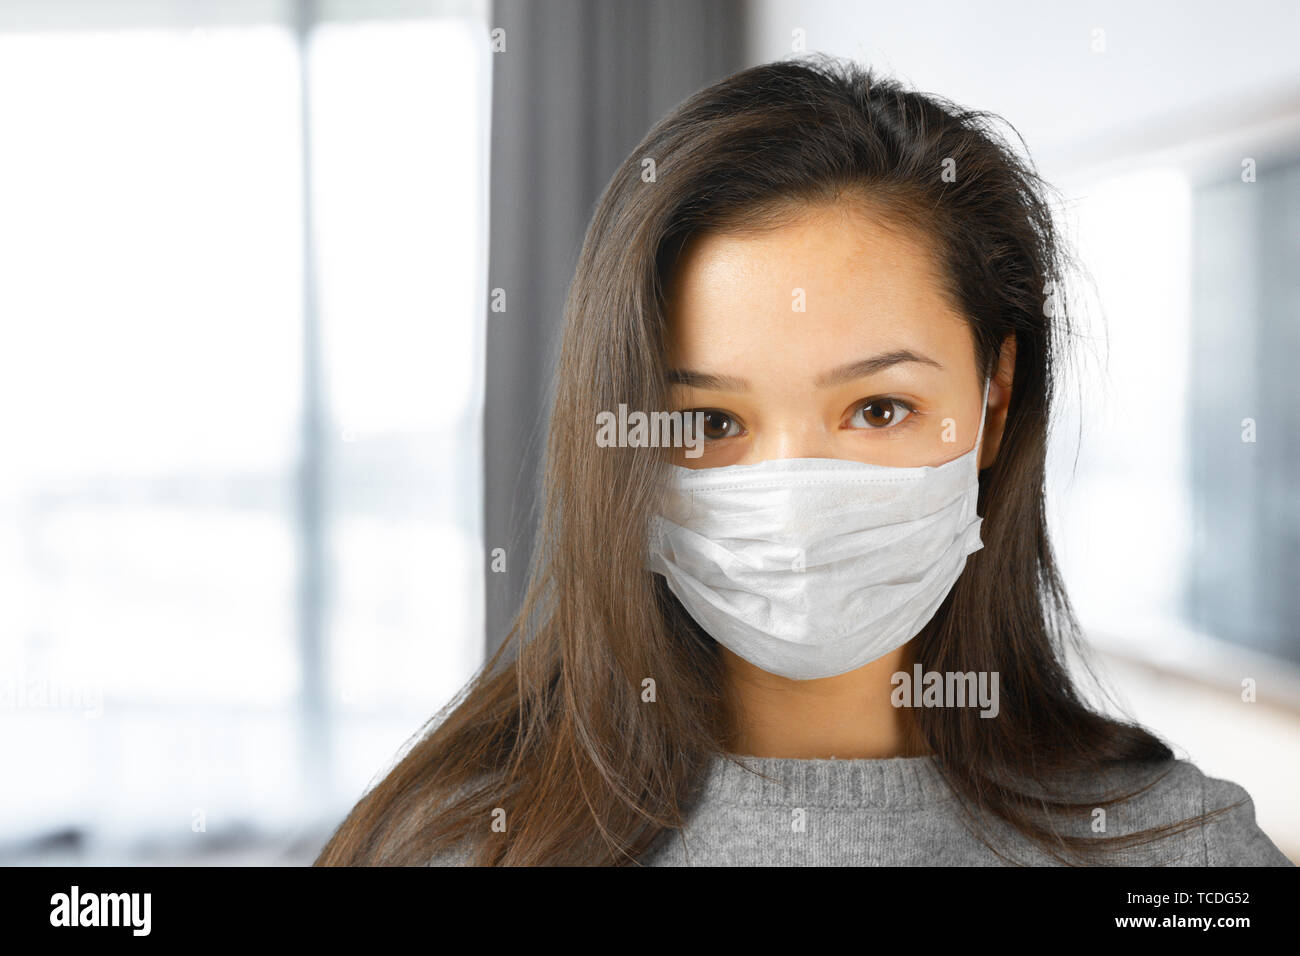 Woman wearing face mask Stock Photo - Alamy